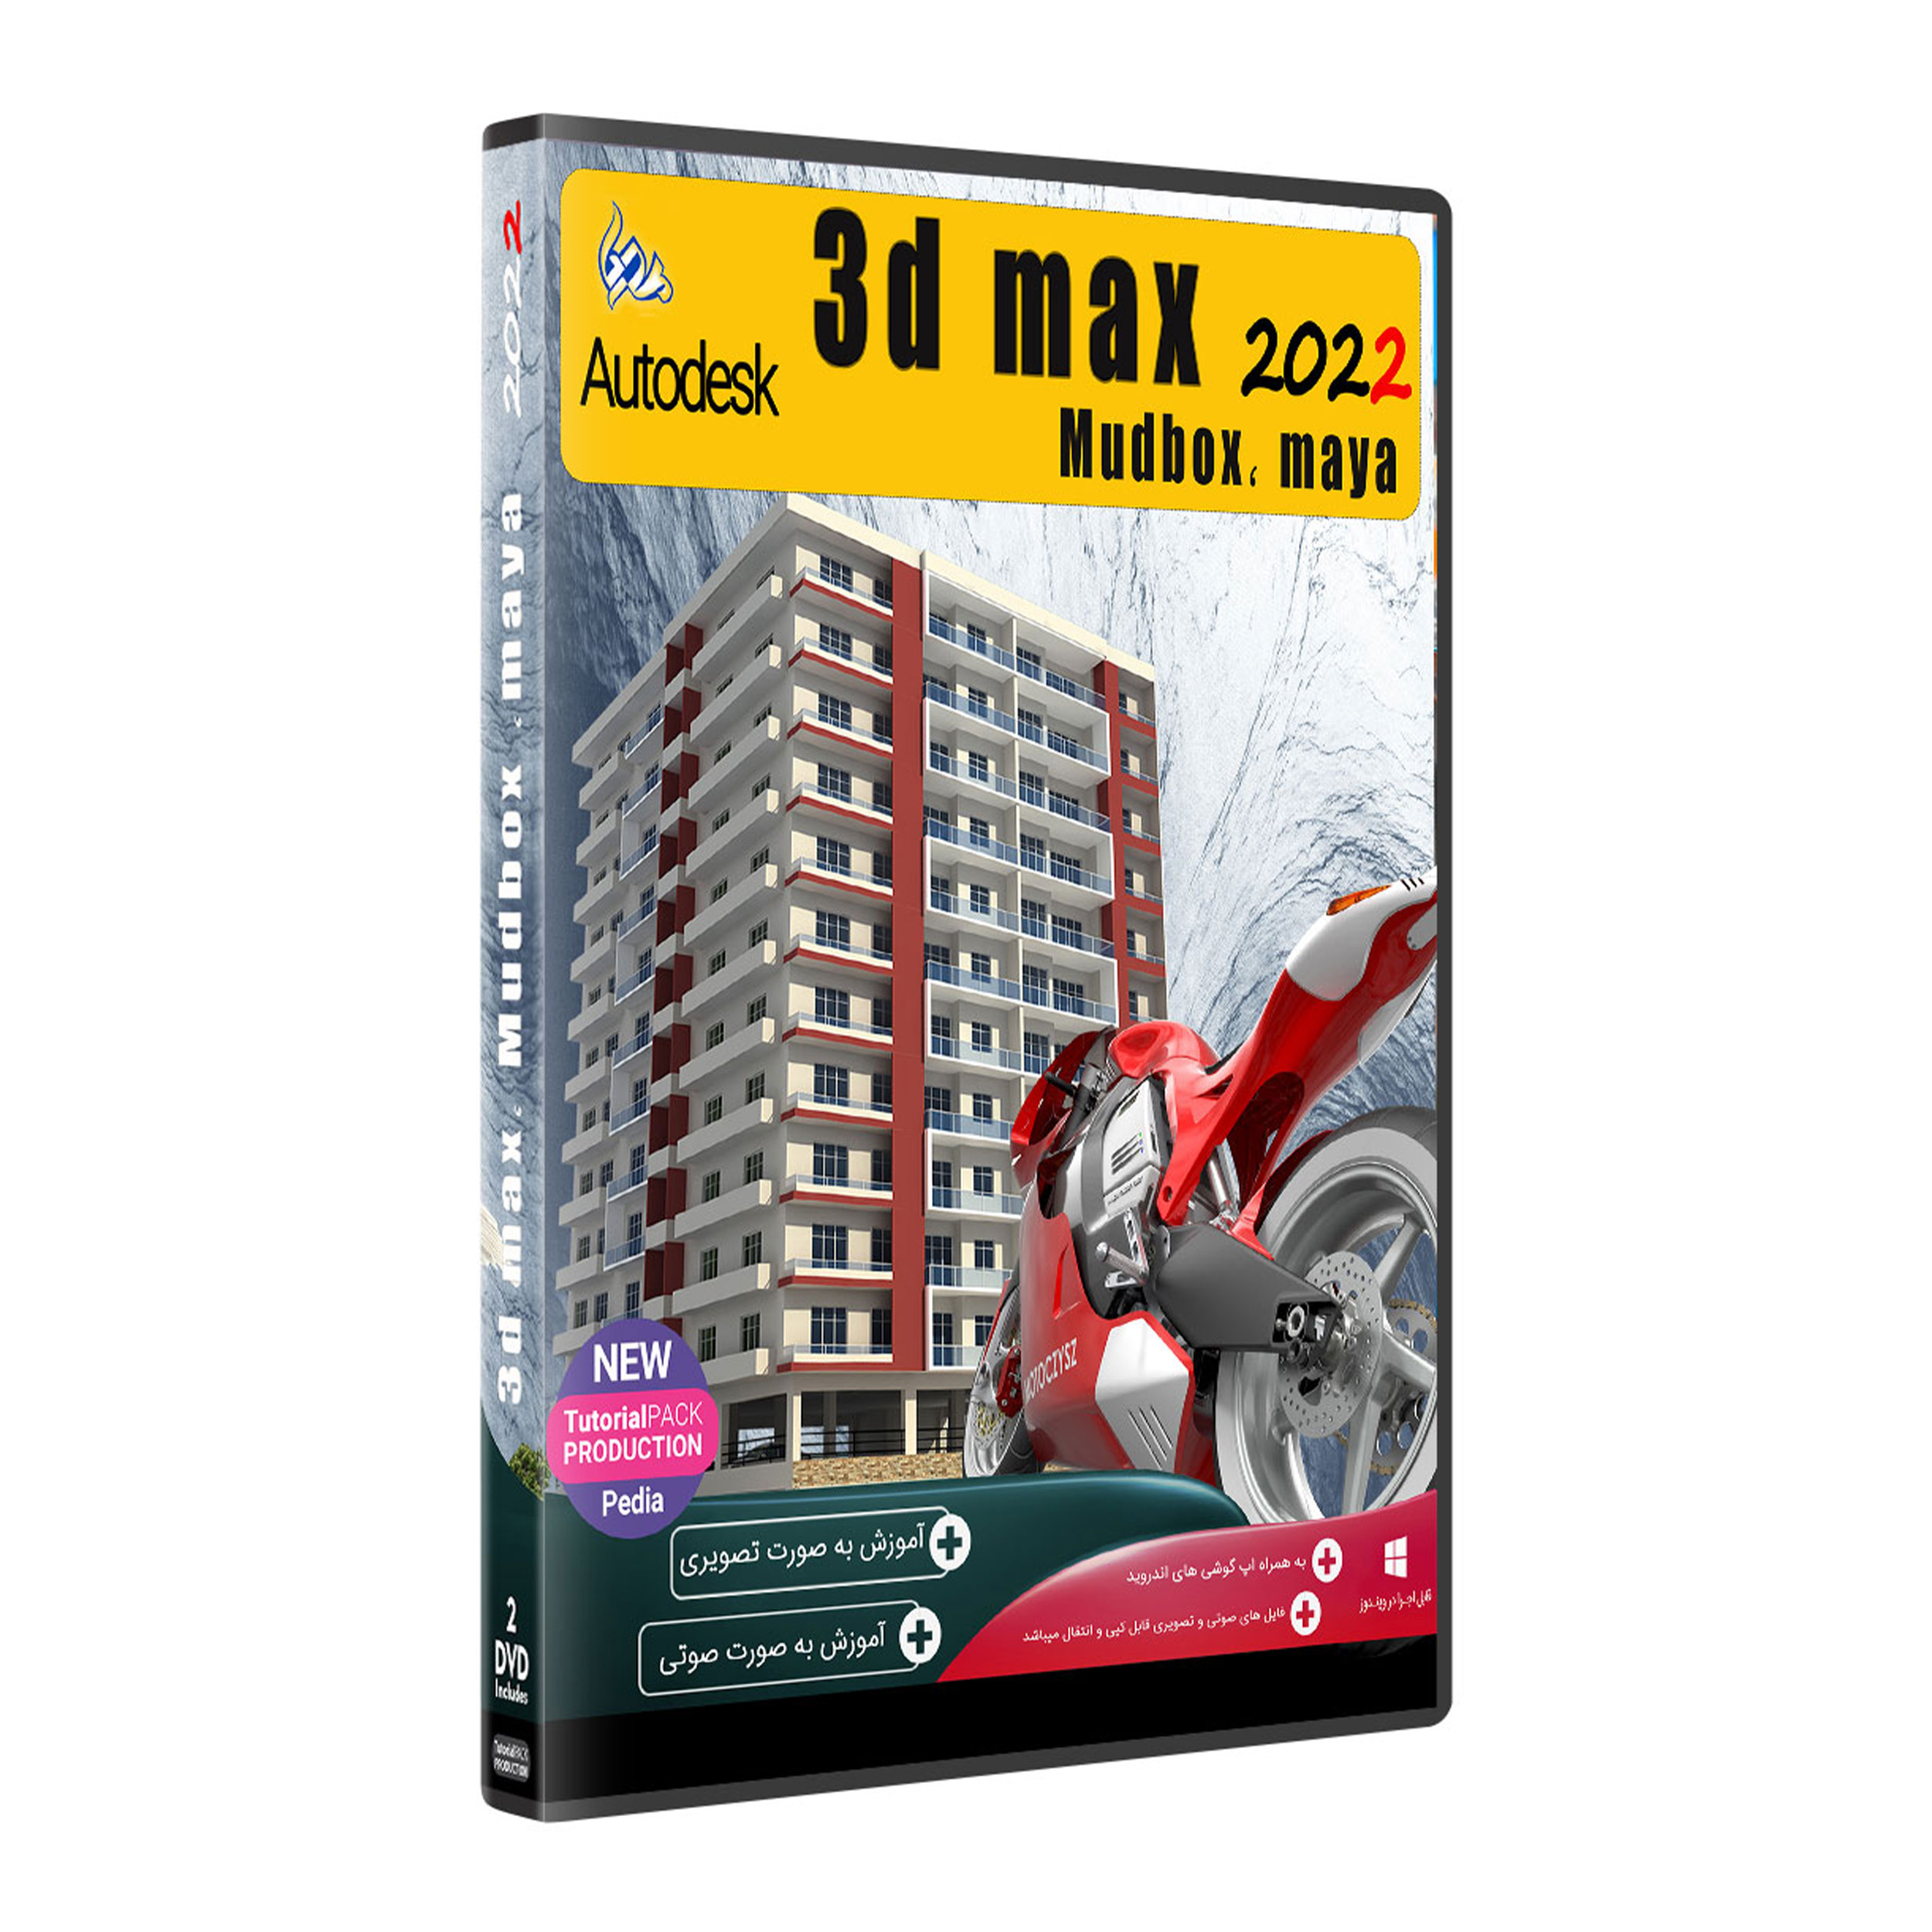 نرم افزار Autodesk 3D MAX 2022 + MUDBOX , MAYA نشر پدیا